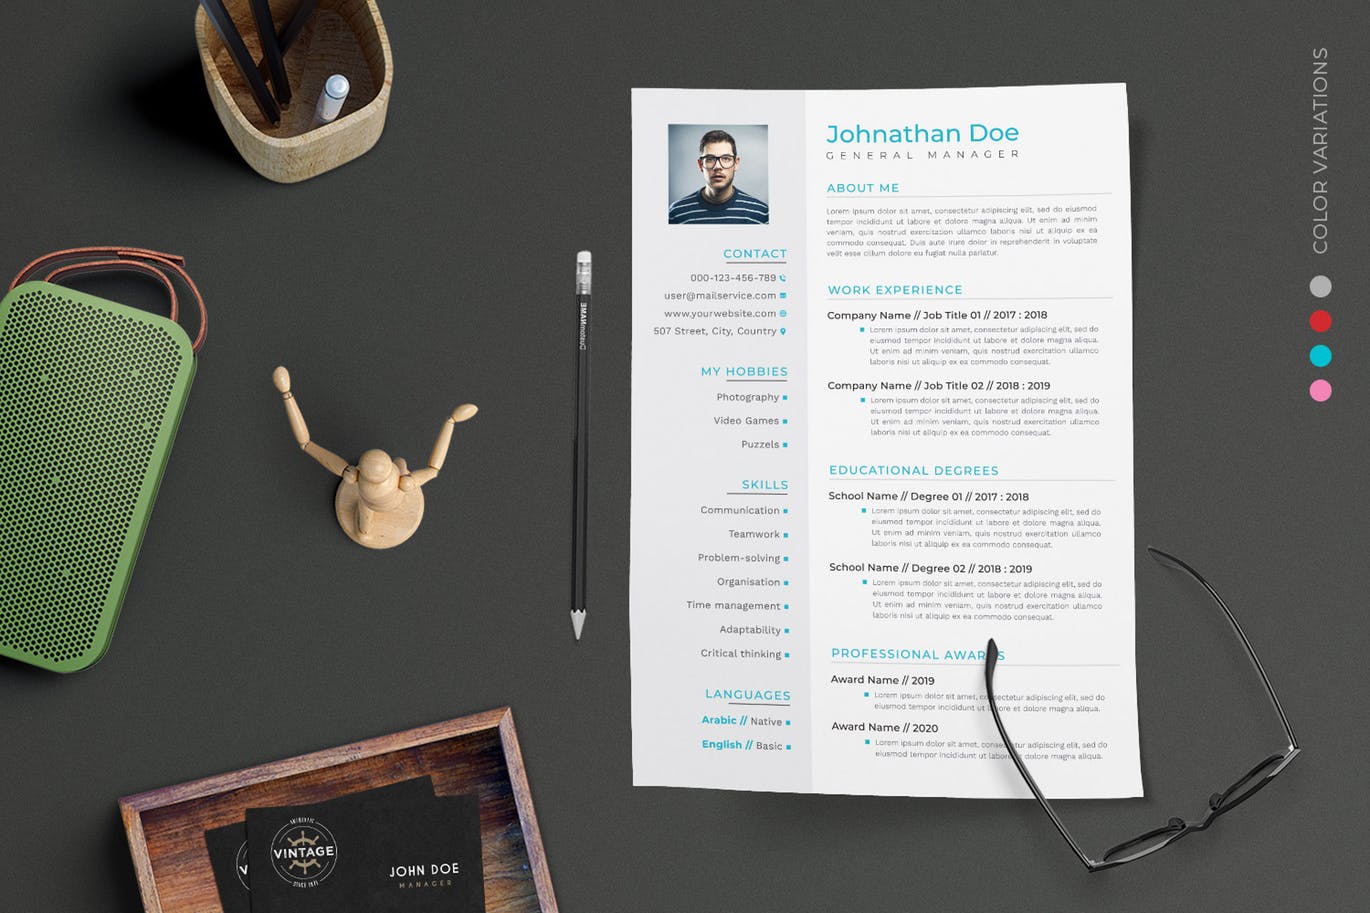 项目管理经理个人电子大洋岛精选简历模板 CV Resume插图